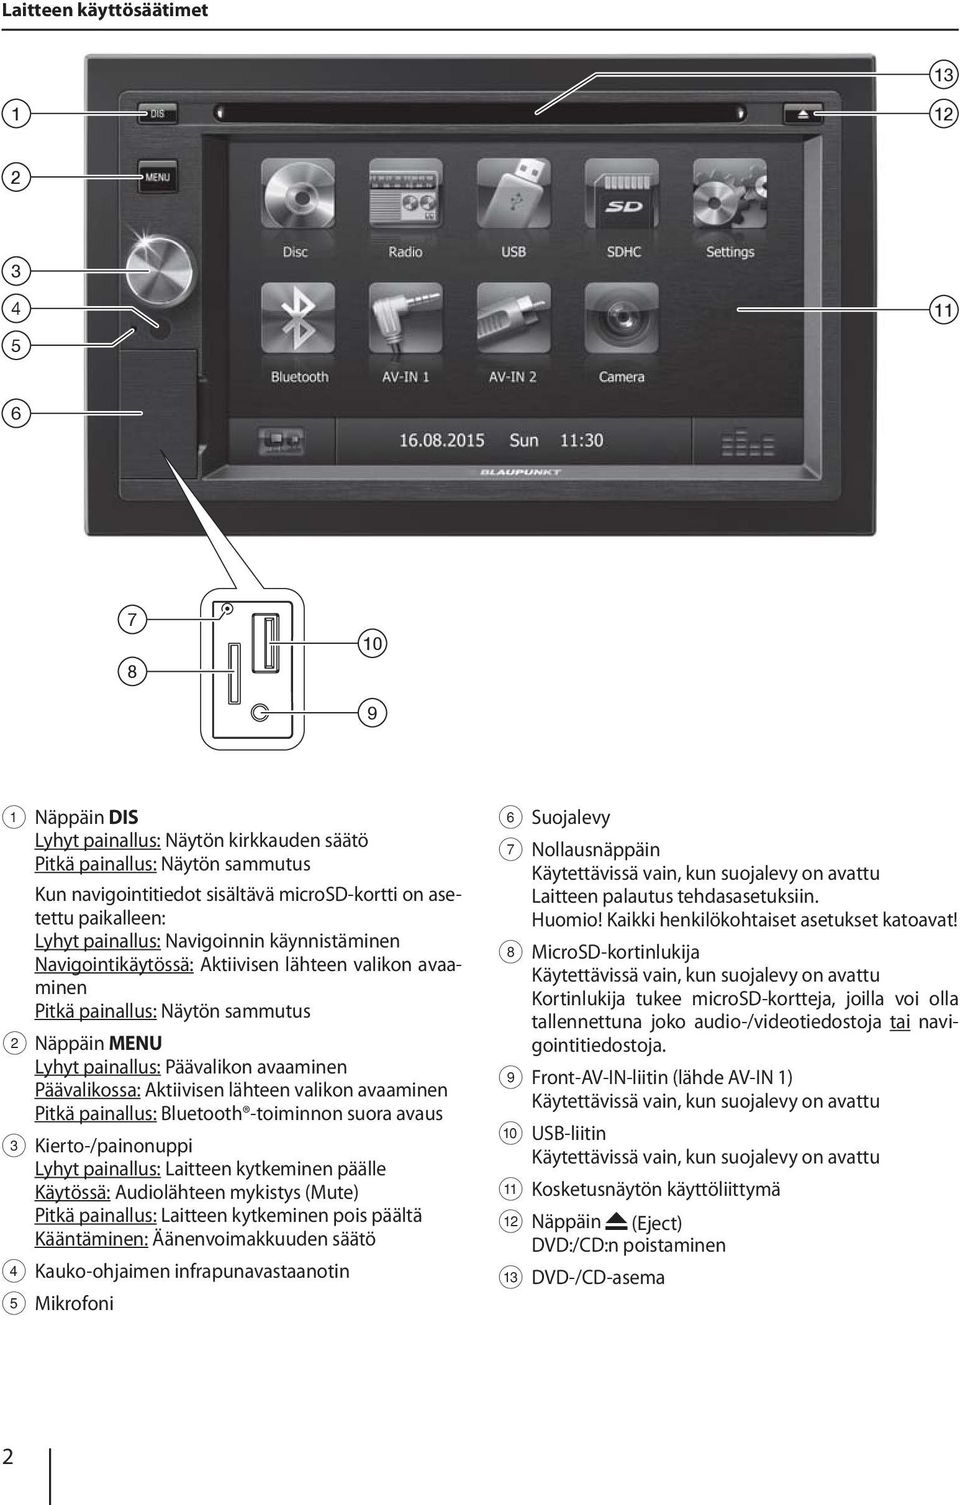 Päävalikossa: Aktiivisen lähteen valikon avaaminen Pitkä painallus: Bluetooth -toiminnon suora avaus 3 Kierto-/painonuppi Lyhyt painallus: Laitteen kytkeminen päälle Käytössä: Audiolähteen mykistys